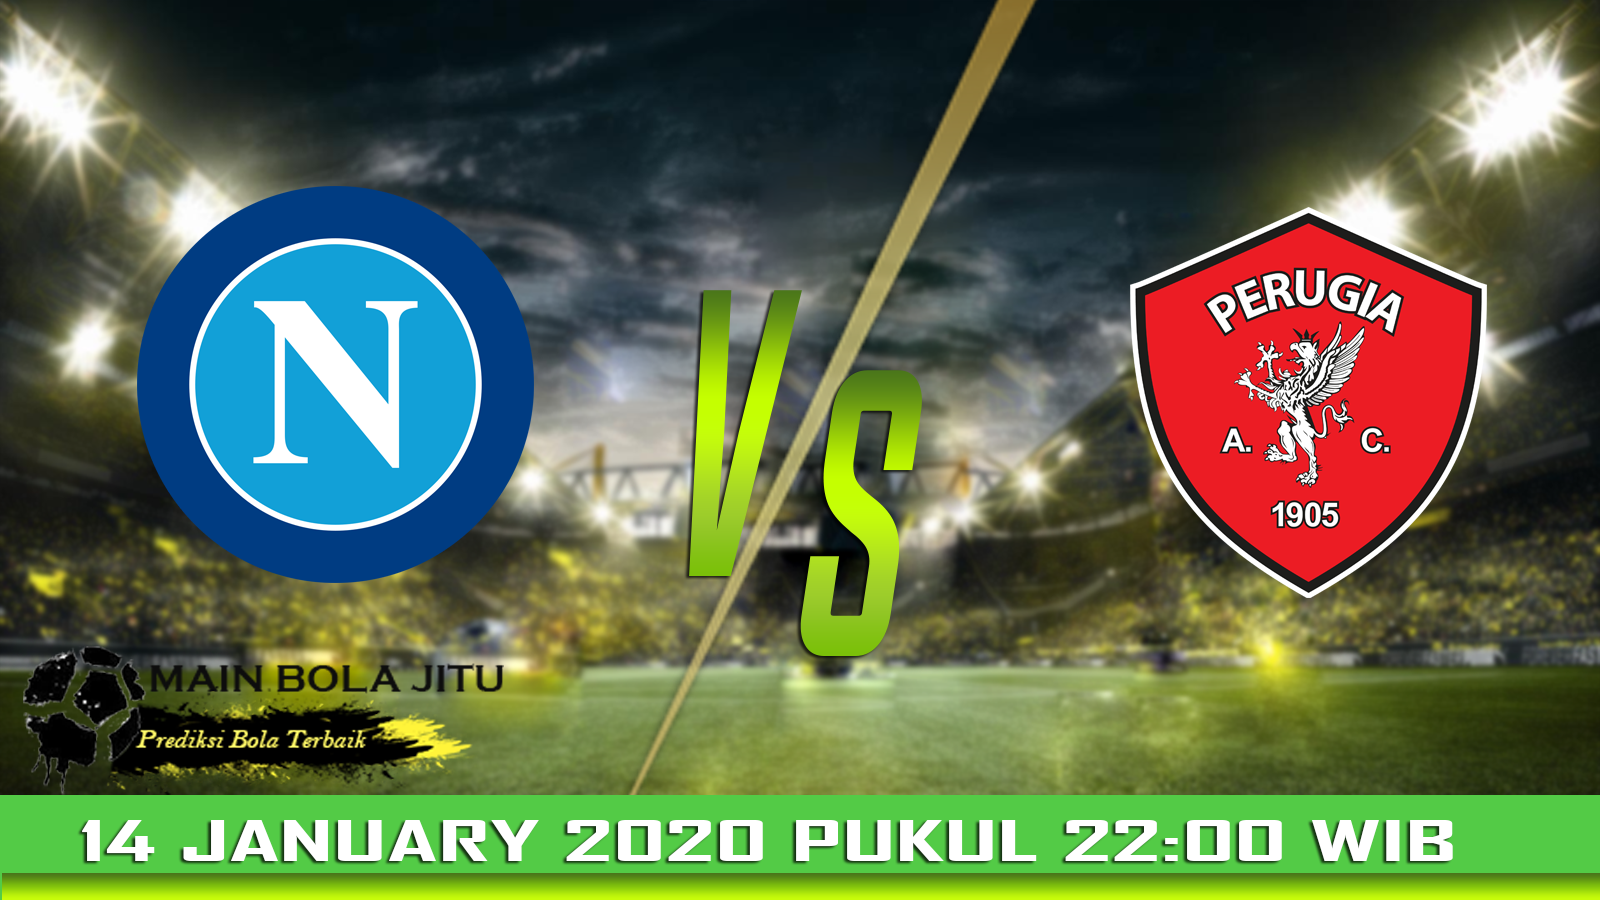 Prediksi Skor Napoli vs Perugia tanggal 14-01-2020